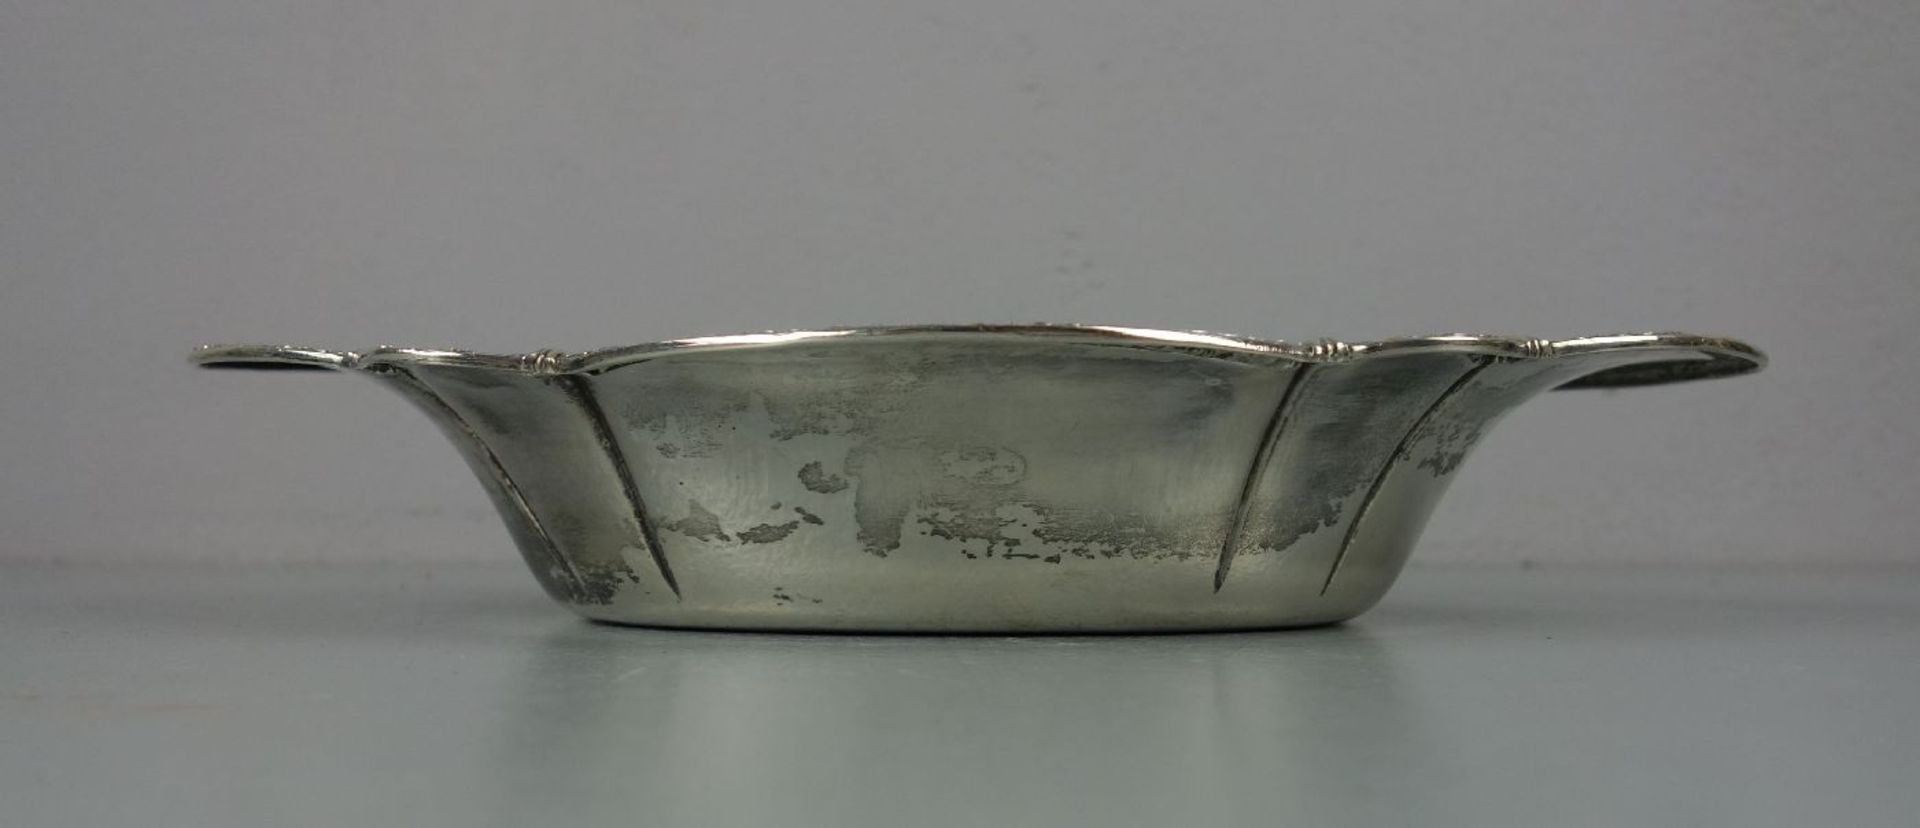 SCHALE, 800er Silber (250 g), gepunzt mit Halbmond, Krone, Feingehaltsangabe und Herstellermarke - Image 4 of 4